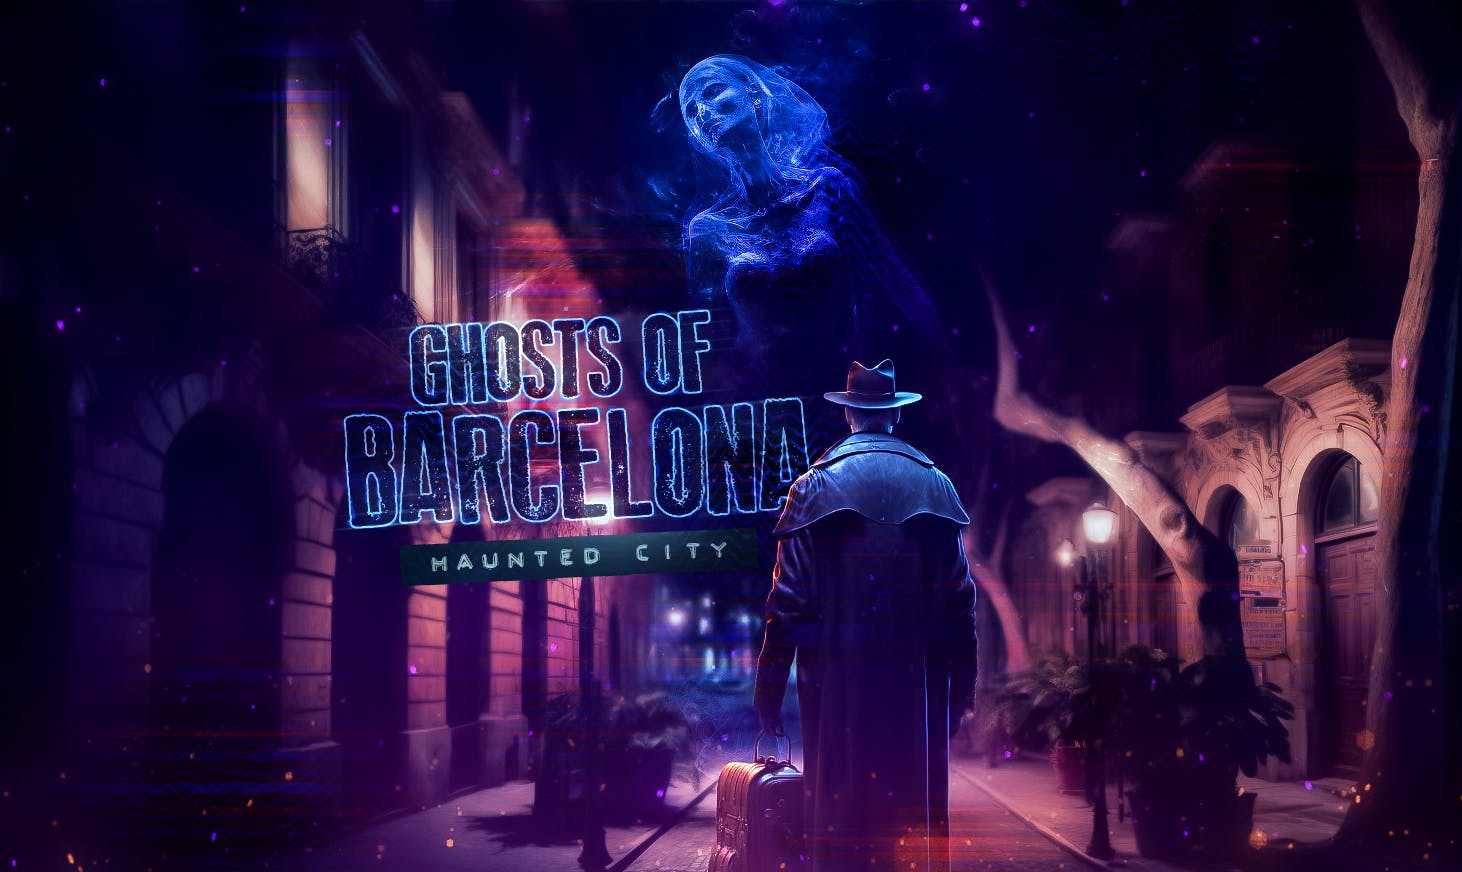 Recorrido y juego de exploración sobre los fantasmas de Barcelona